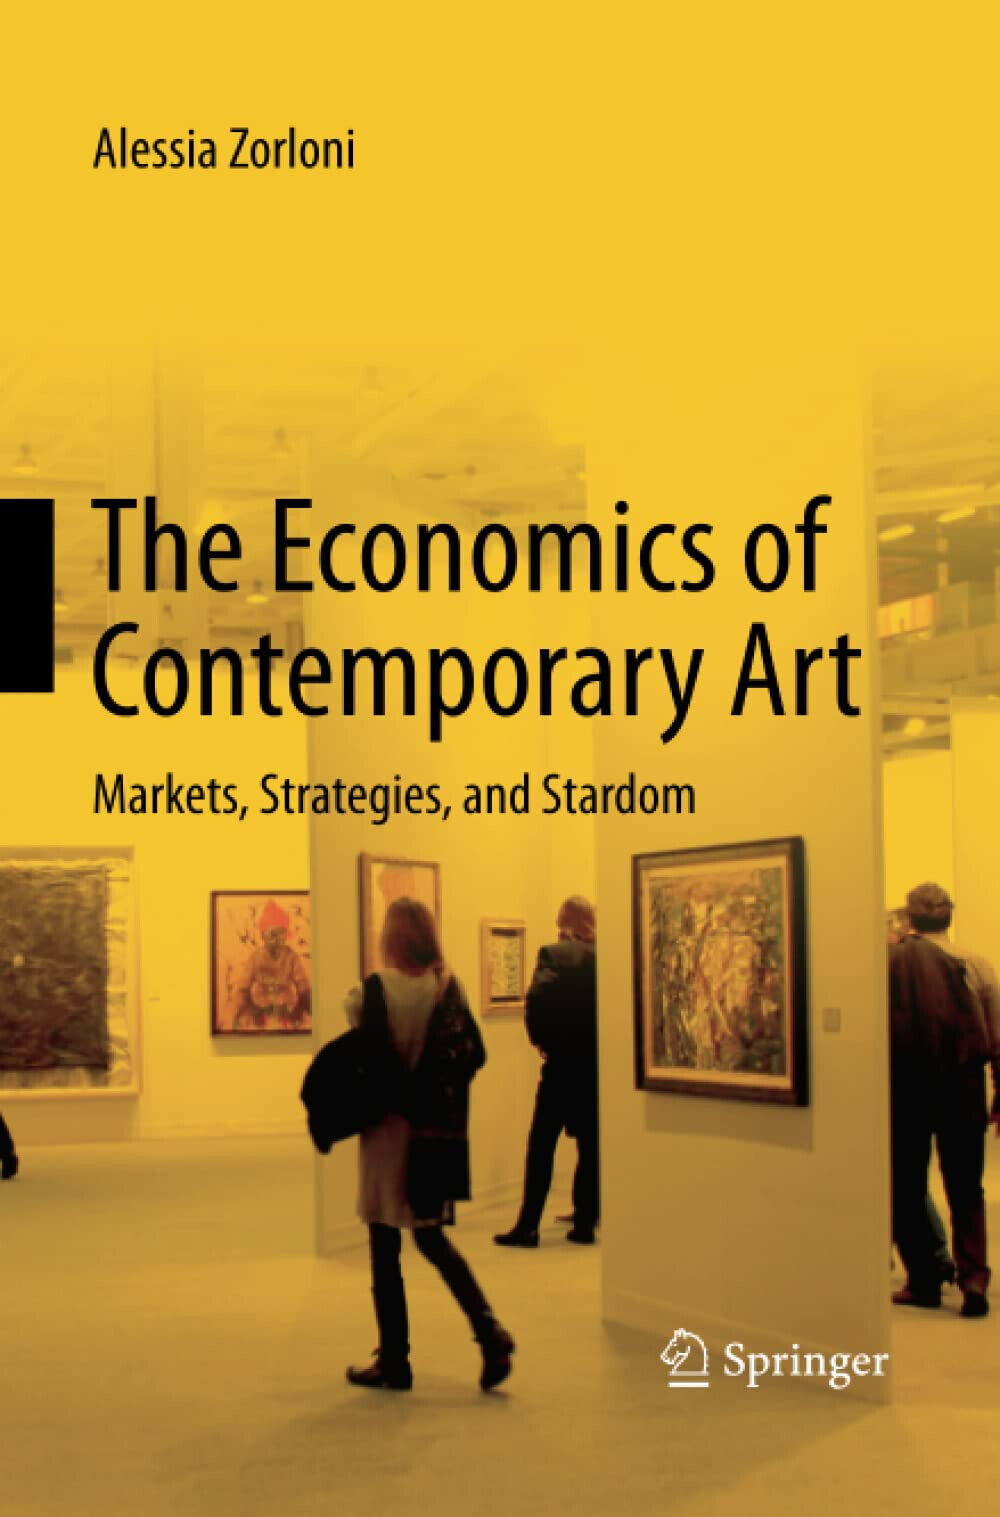 The Economics of Contemporary Art - Alessia Zorloni - Springer, 2015